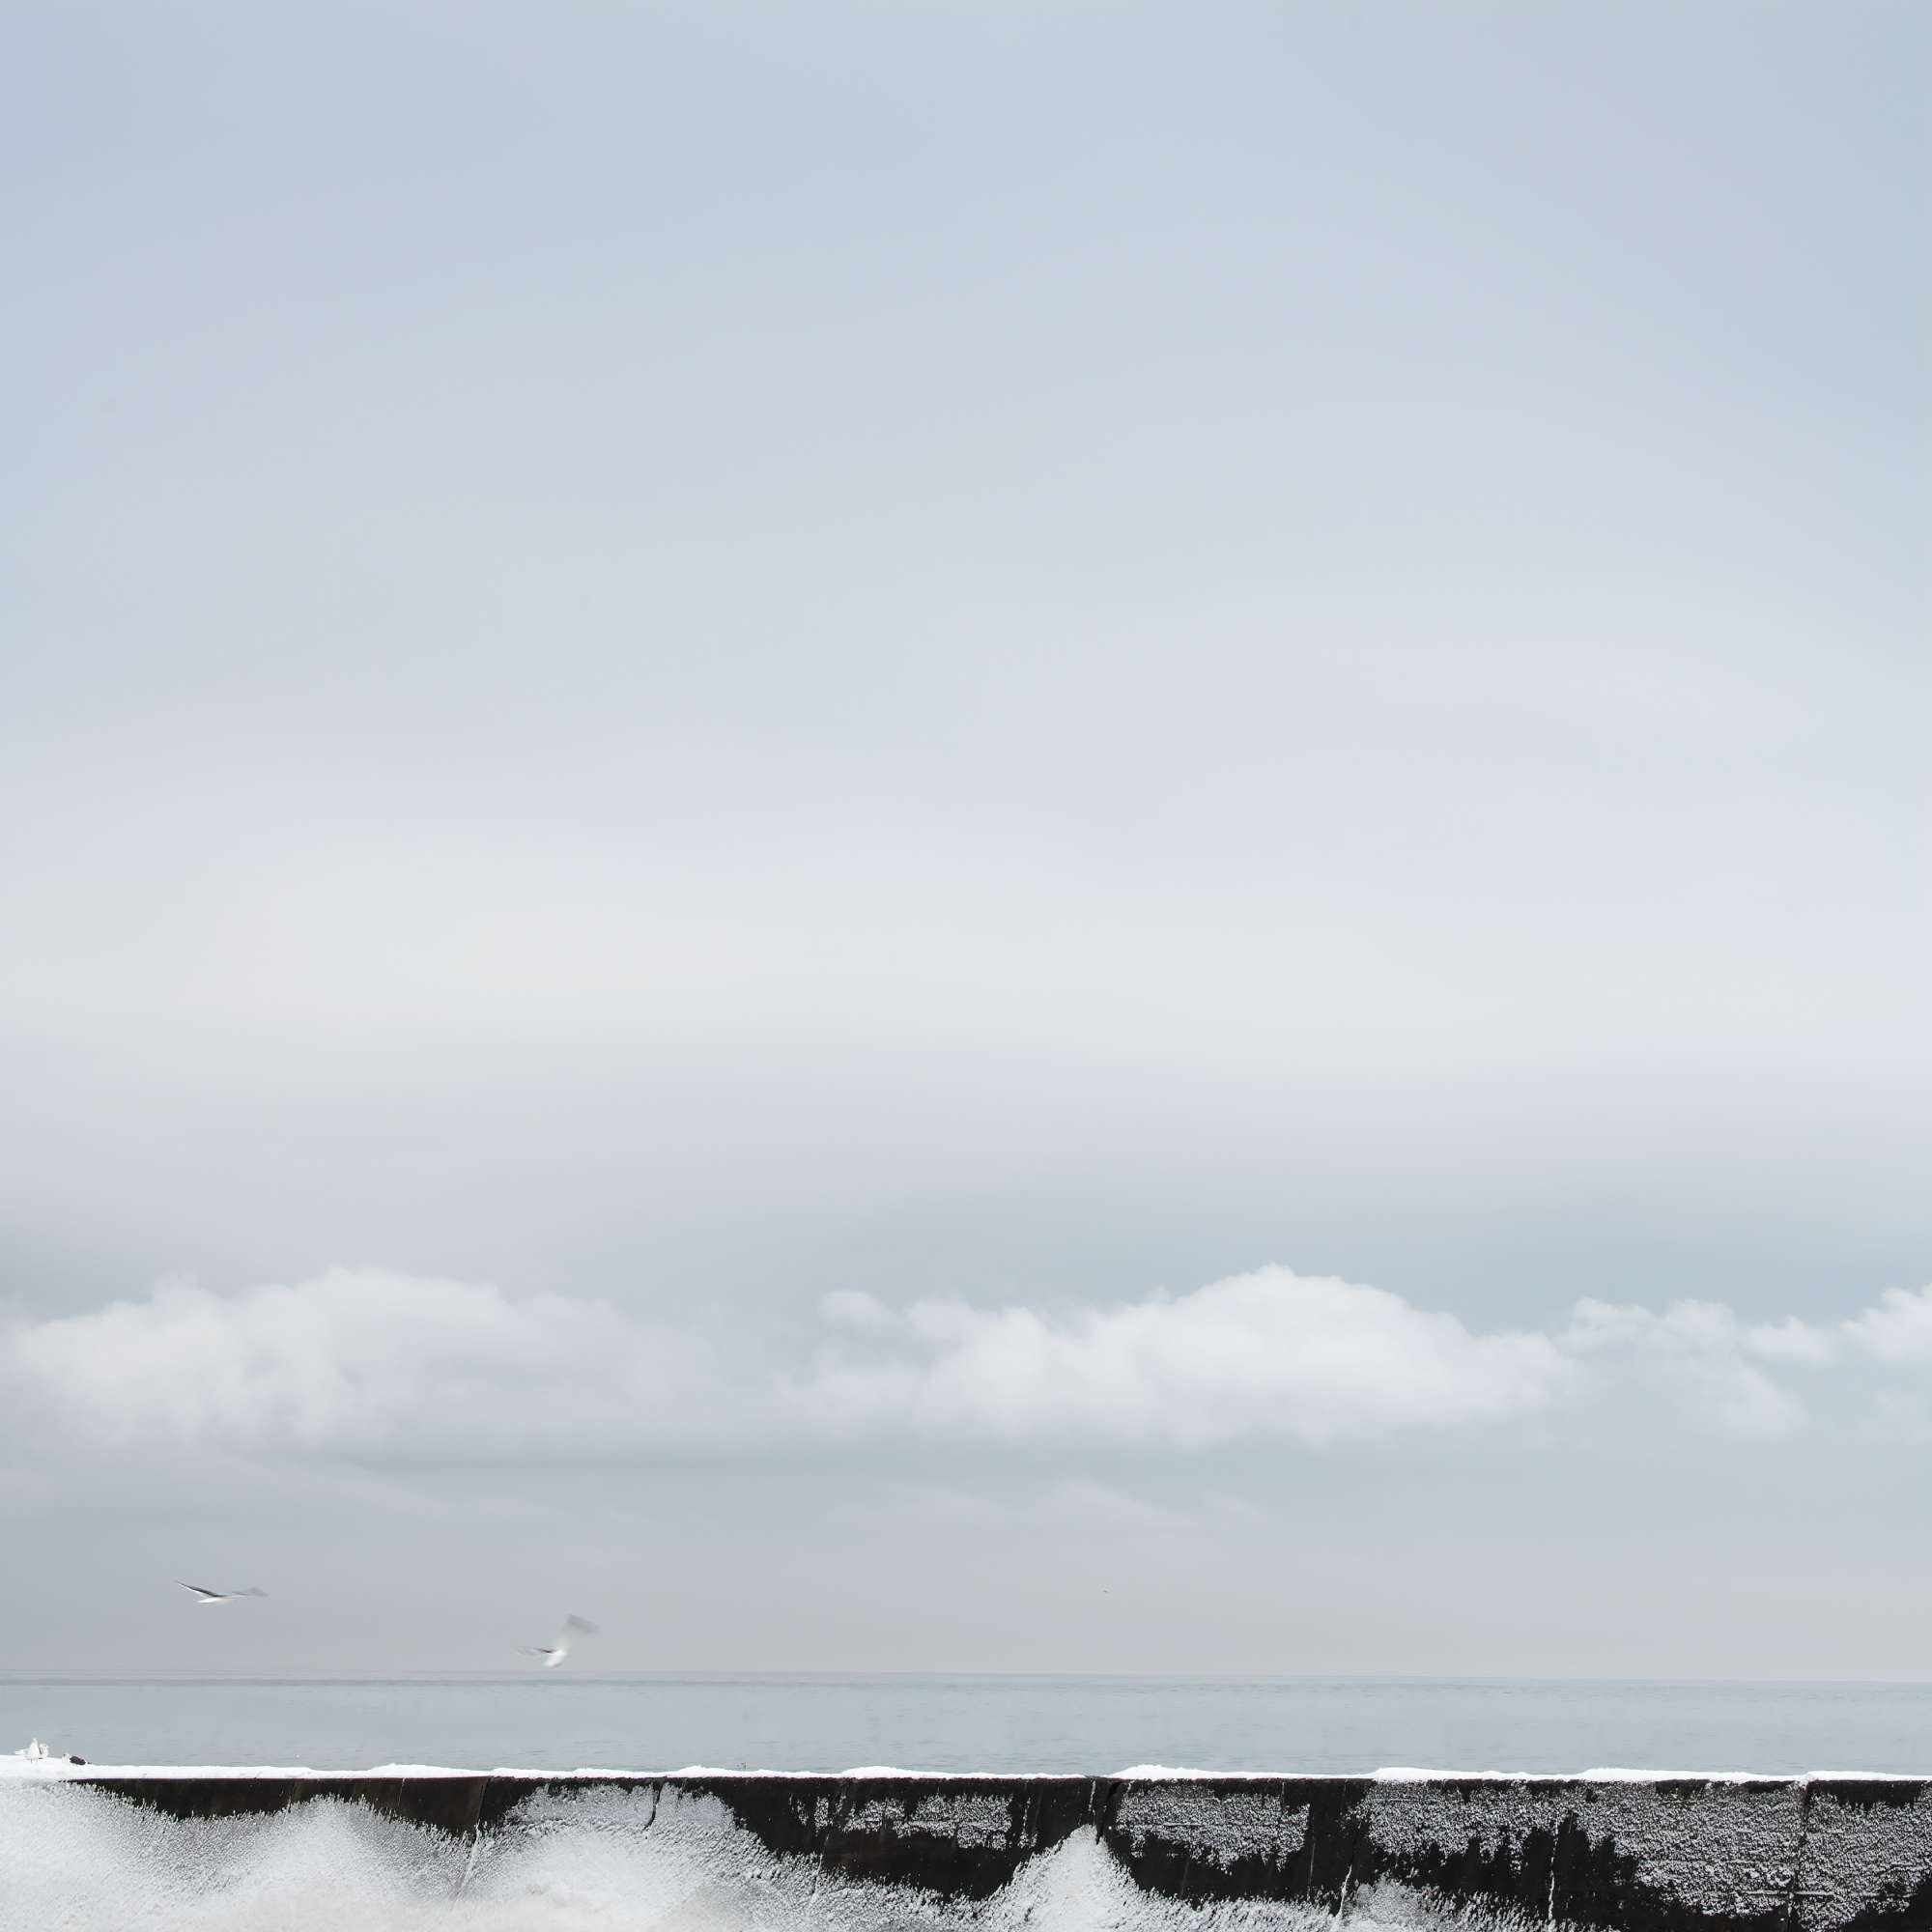 Frozen Sea Wall Hokkaido Japan Michael Pilkington aspect2i